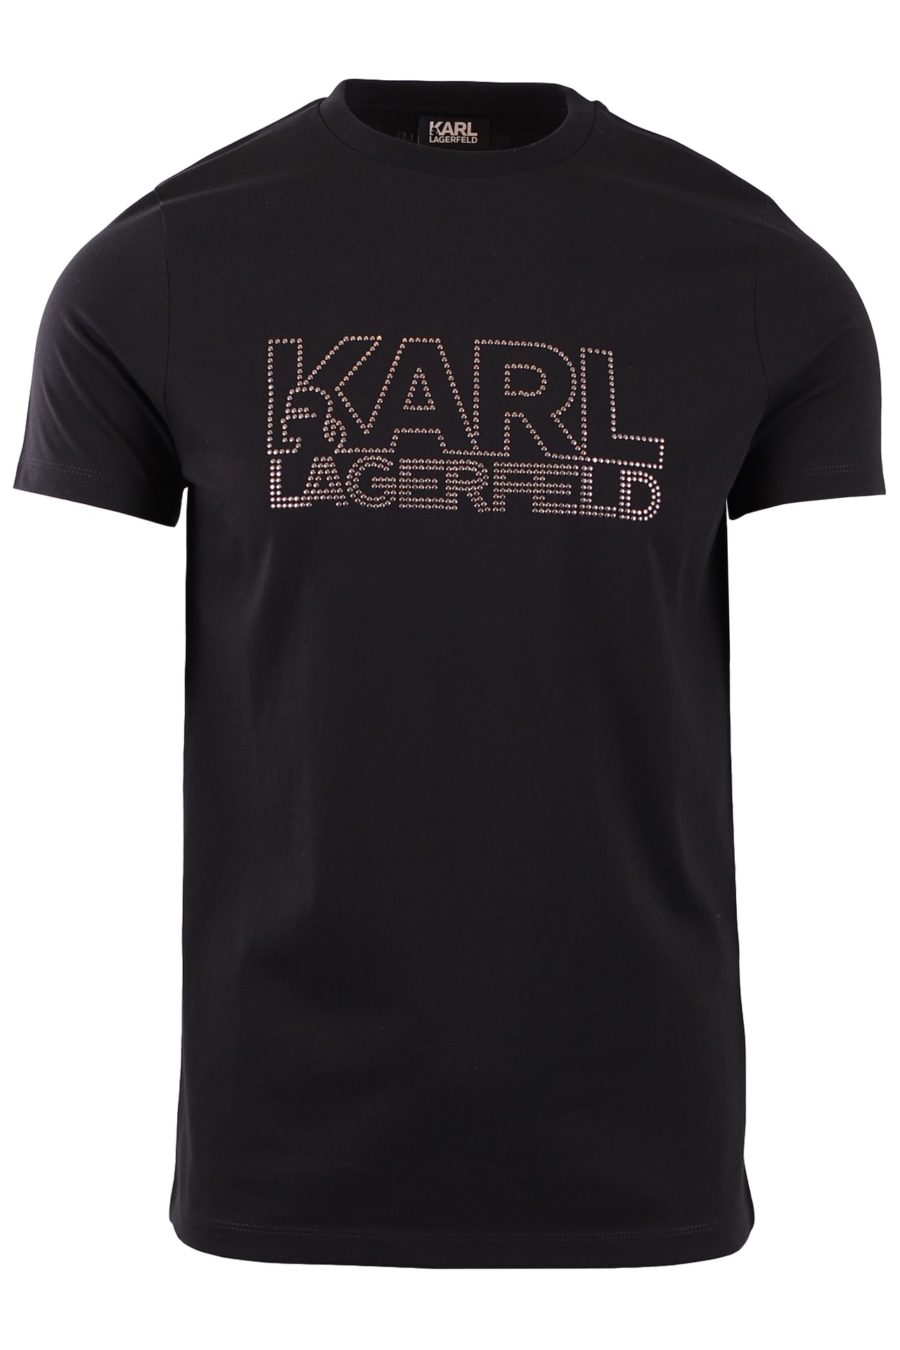 Schwarzes T-Shirt mit Nieten "Karl" - aaa8fd7d51ad692eb2c1a7ad1cc8b3b88bcff845